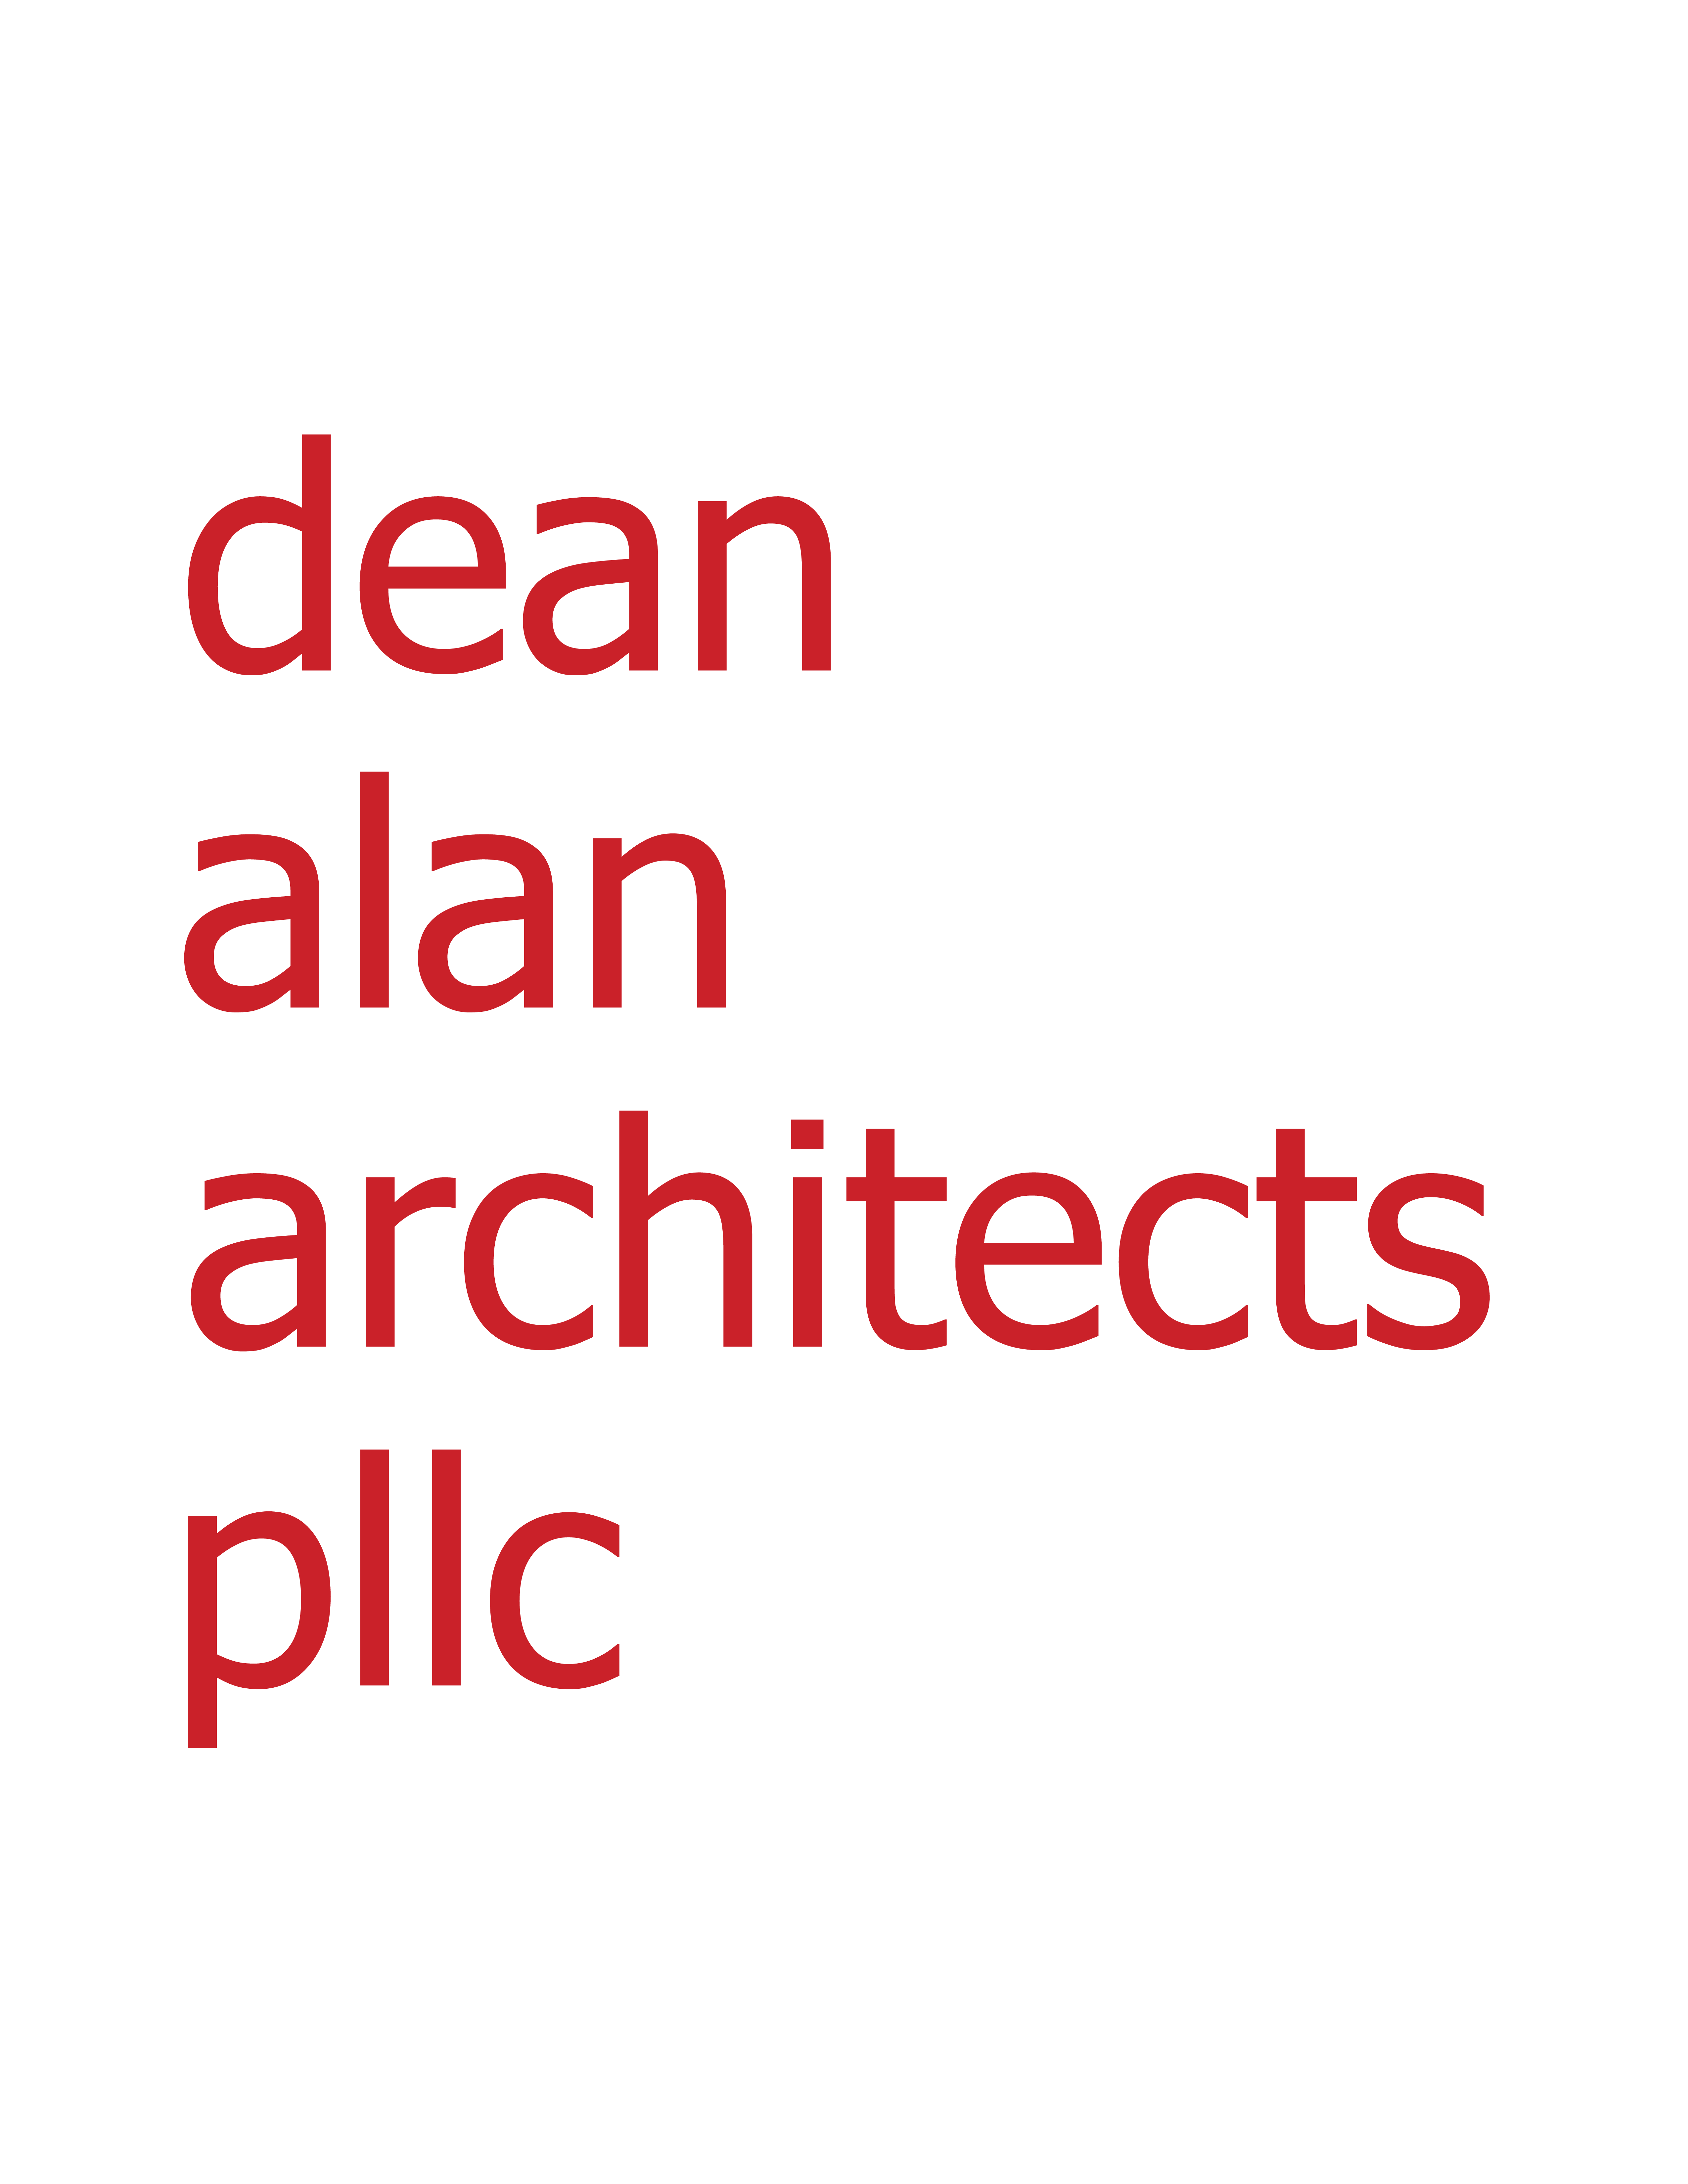 dean allen architects logo